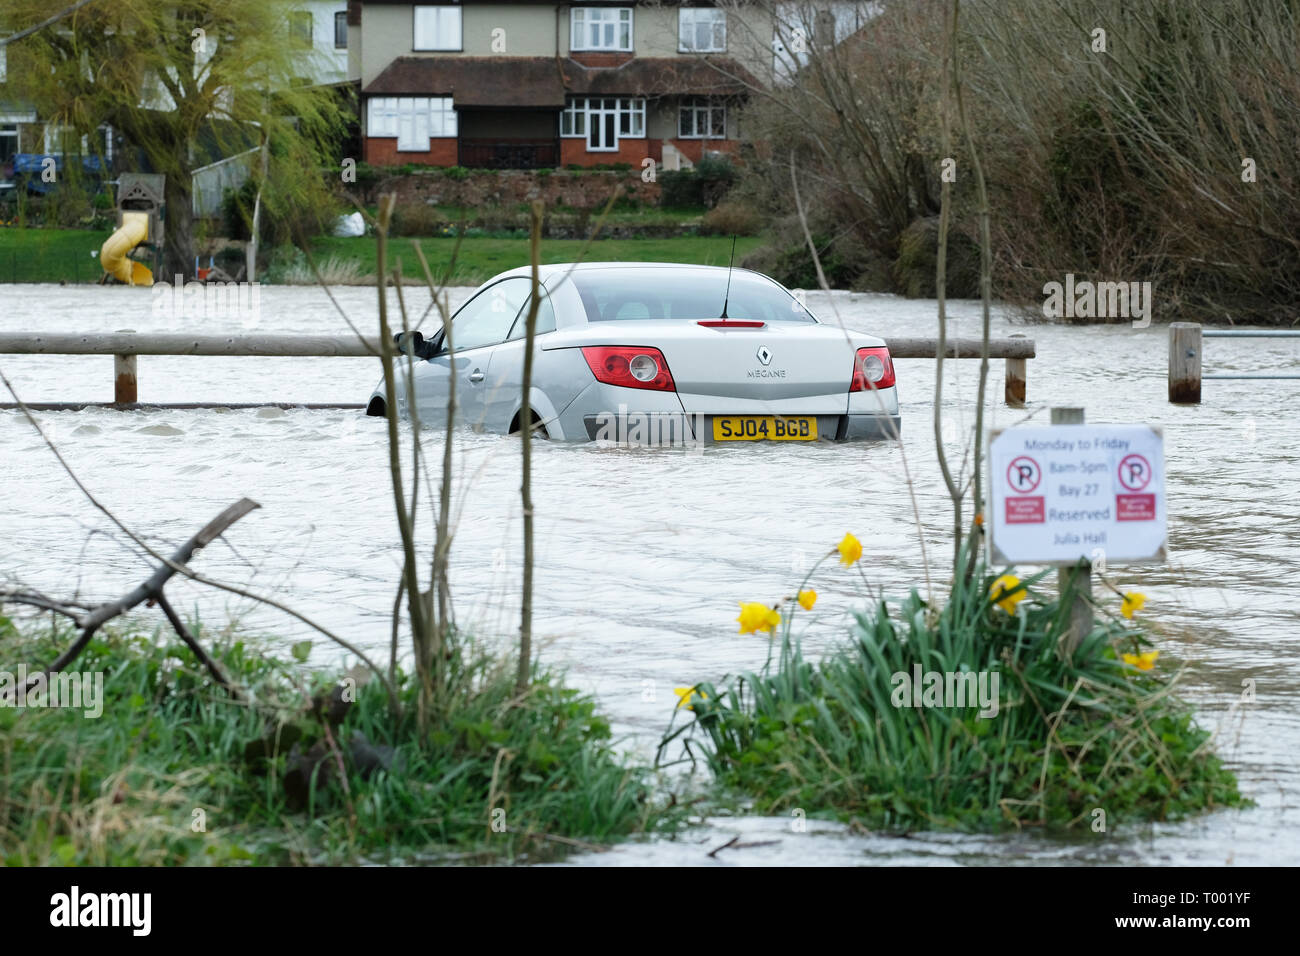 Hereford, Herefordshire, UK - Samedi 16 Mars 2019 - UK - signes du printemps - une voiture entourée par les eaux de crue dans un parking à côté de la rivière Wye dans Hereford - l'Agence de l'Environnement dispose actuellement de 17 avertissements d'inondations et 57 d'alerte d'inondations à travers l'Angleterre avec plus de fortes pluies prévues dans le pays de Galles et l'Ouest au cours de la fin de semaine. Photo Steven Mai /Alamy Live News Banque D'Images